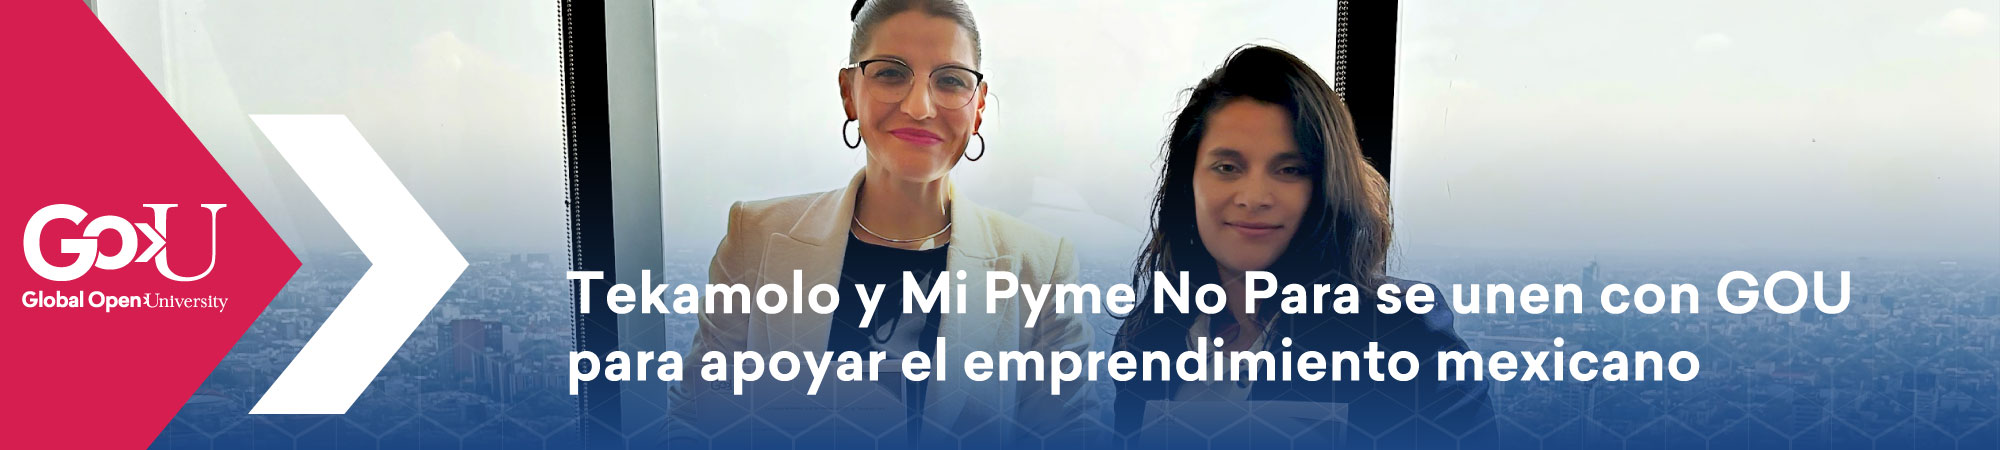 Tekamolo y Mi Pyme No Para se unen con GOU para apoyar el emprendimiento mexicano